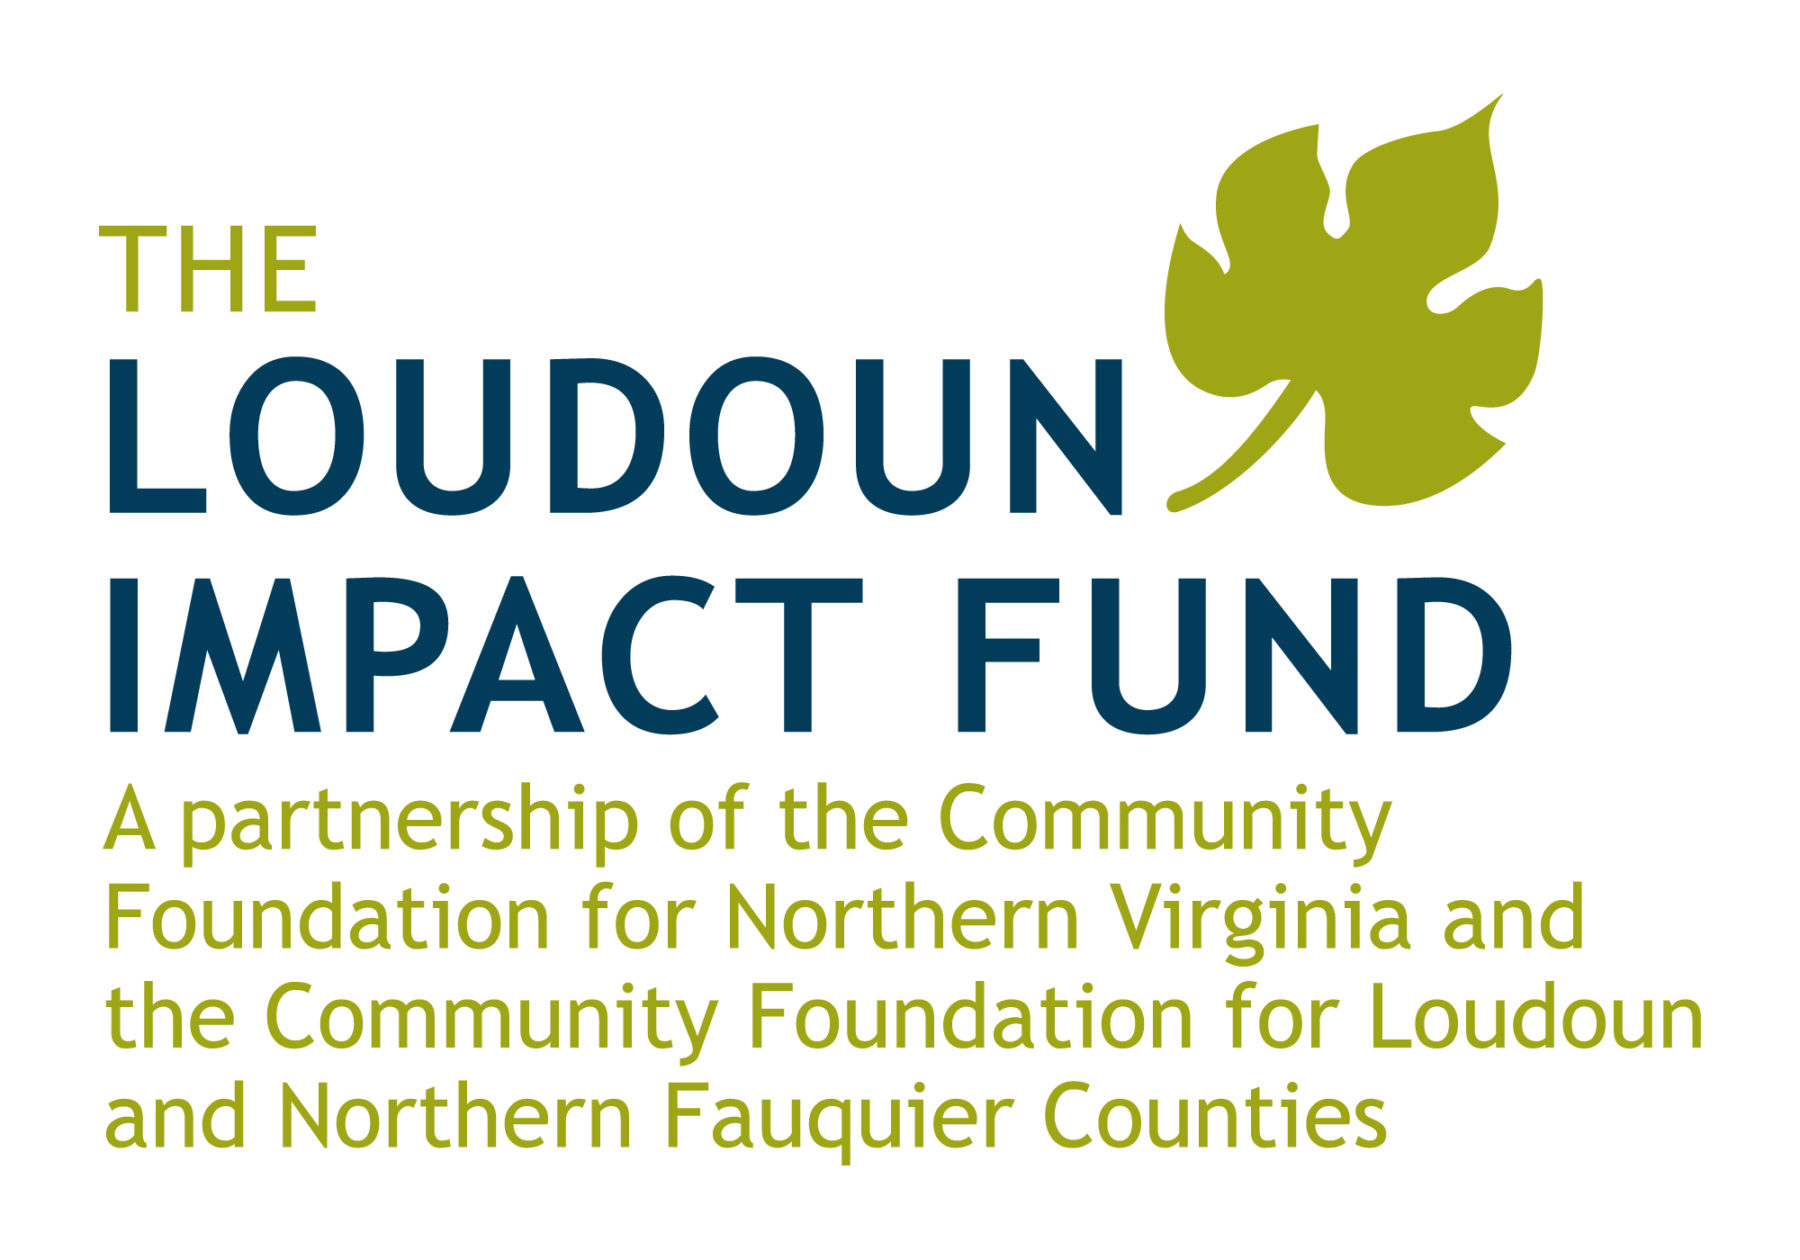 The Loudoun Impact Fund